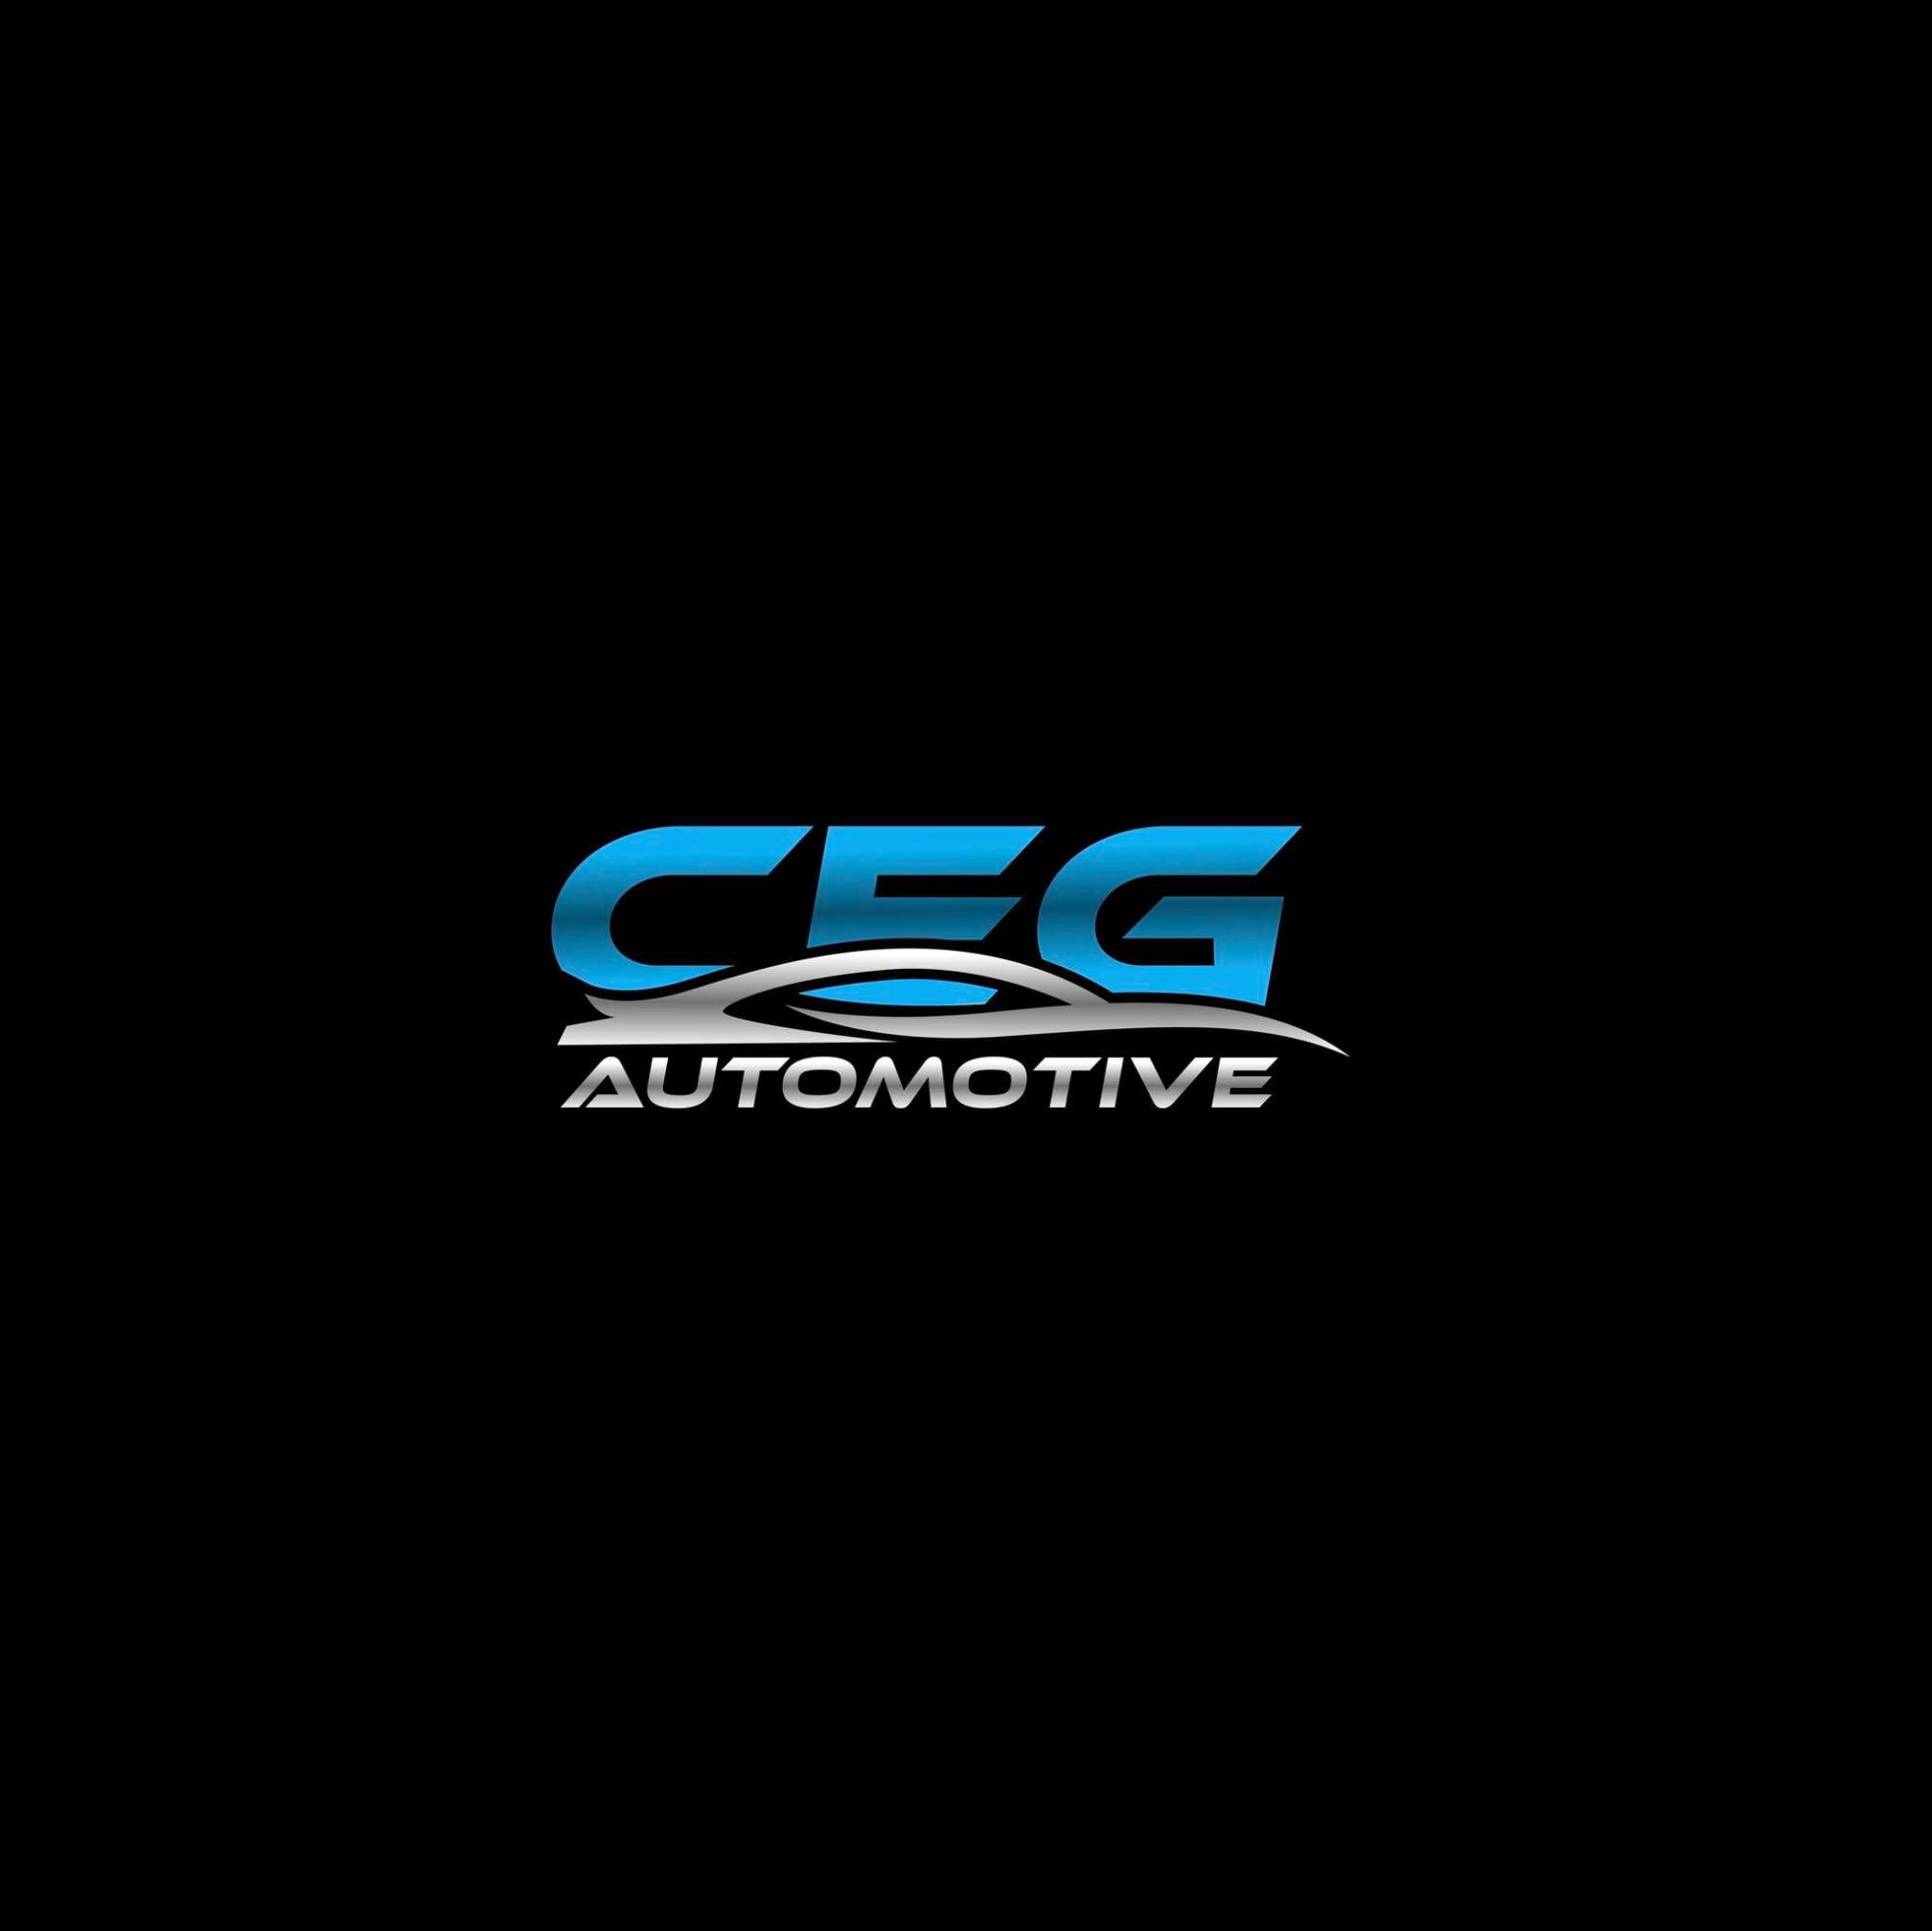 Images CEG Automotive Ltd